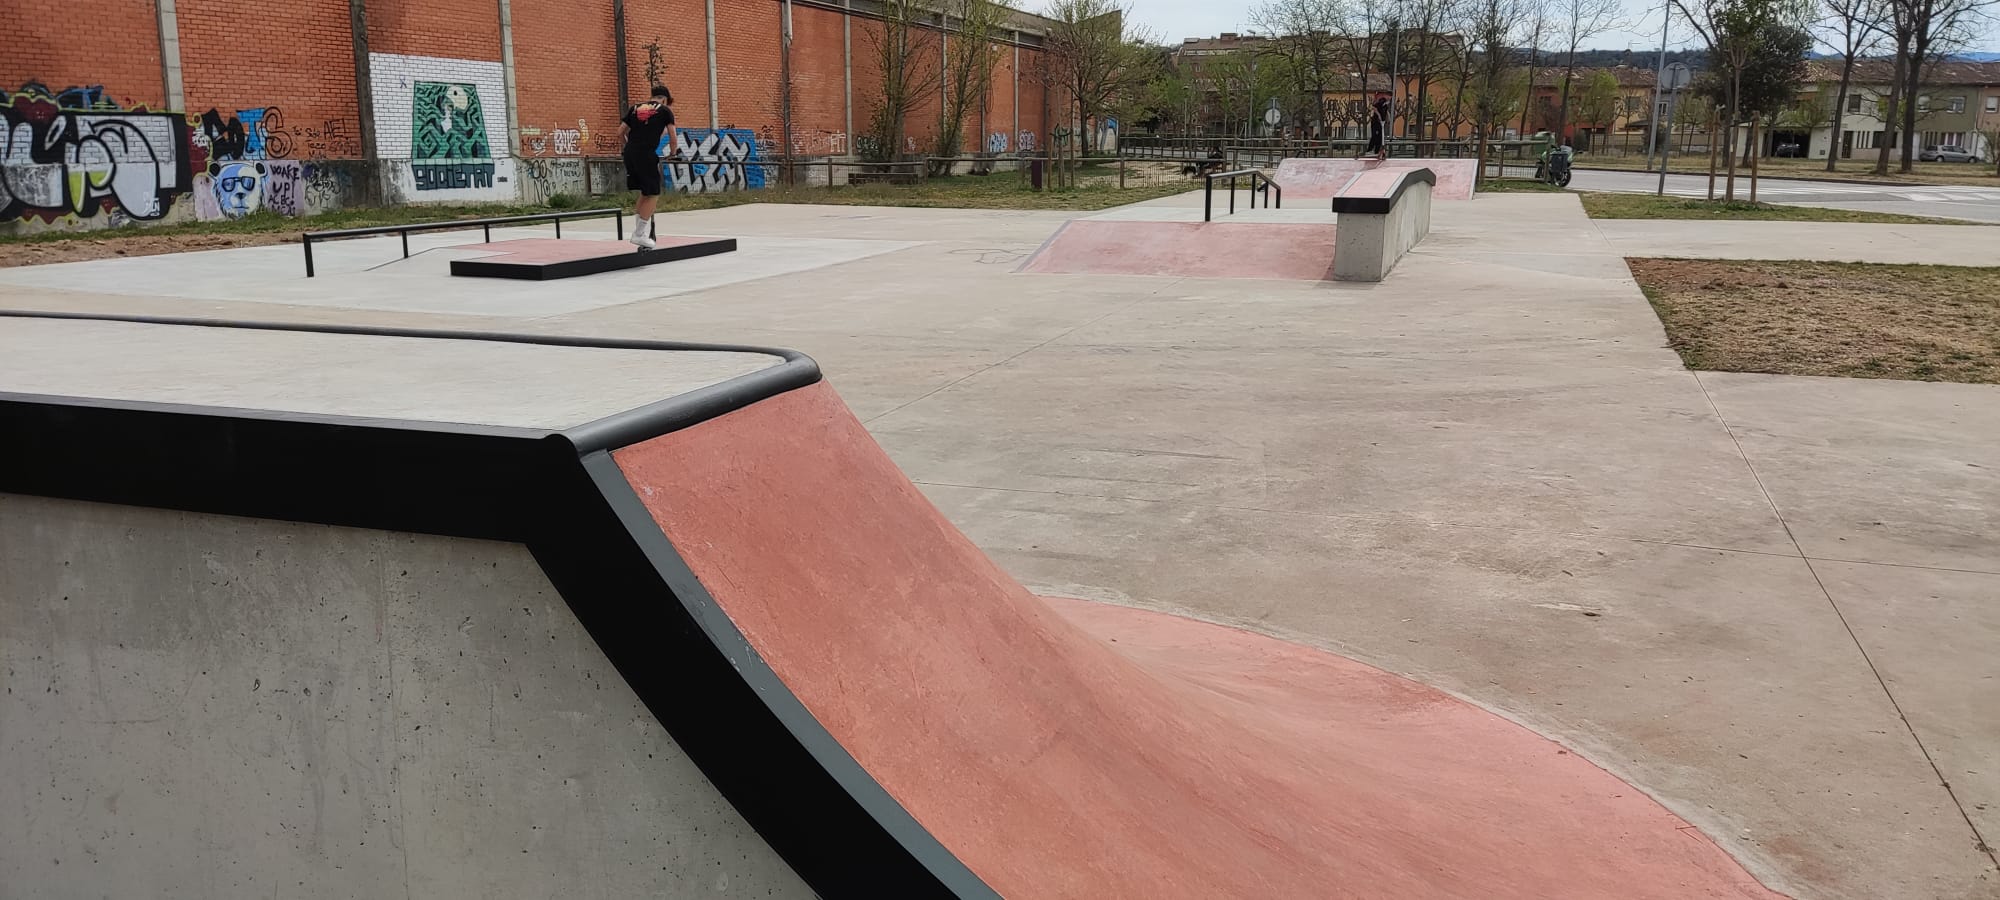   Imatge de l'skatepark, situat davant de l'Institut Miquel Martí i Pol.